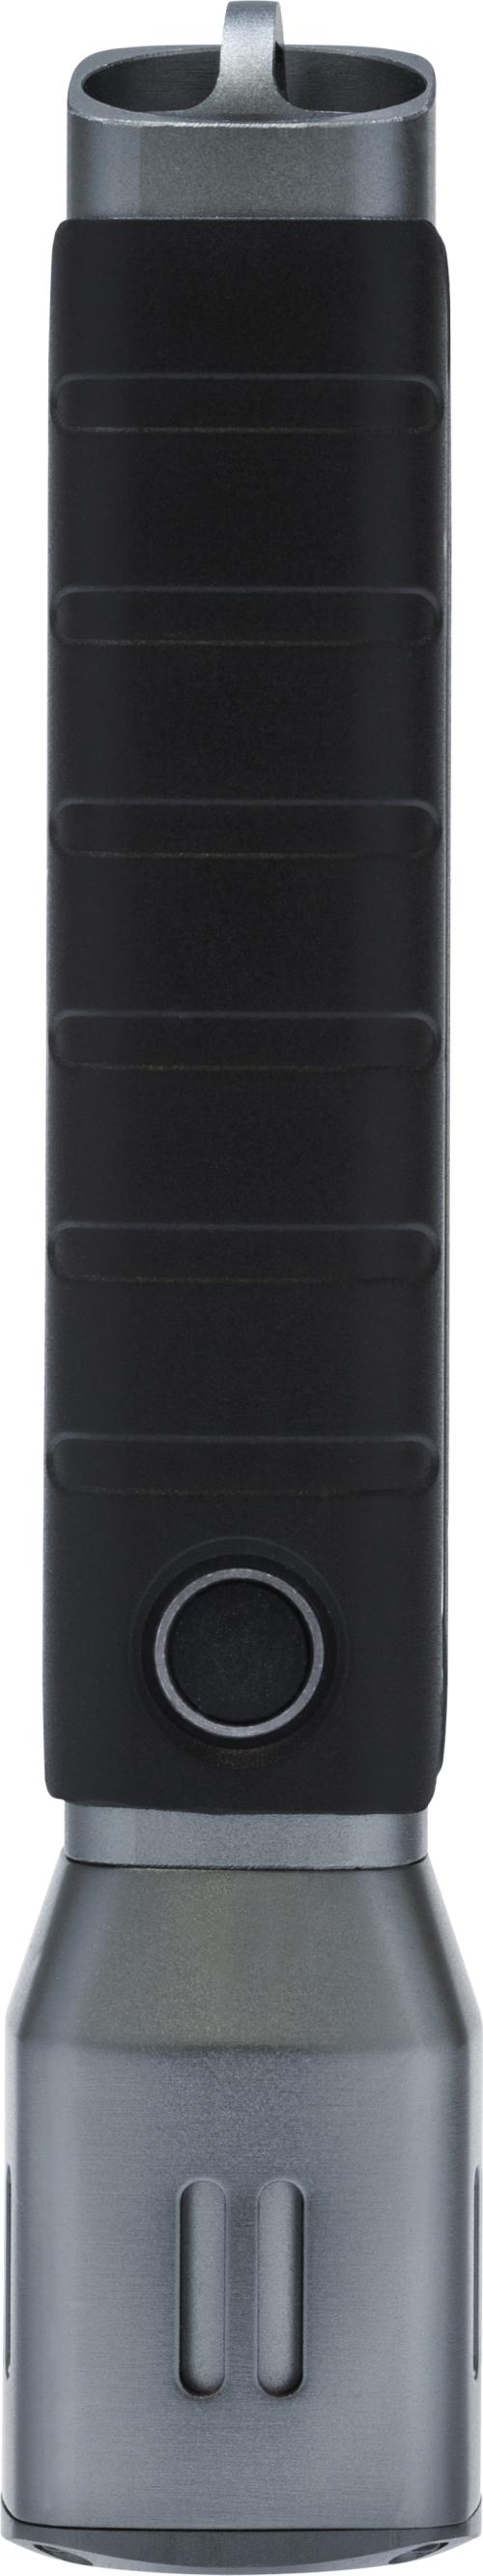 Taschenlampe TL-517, 17,2 cm